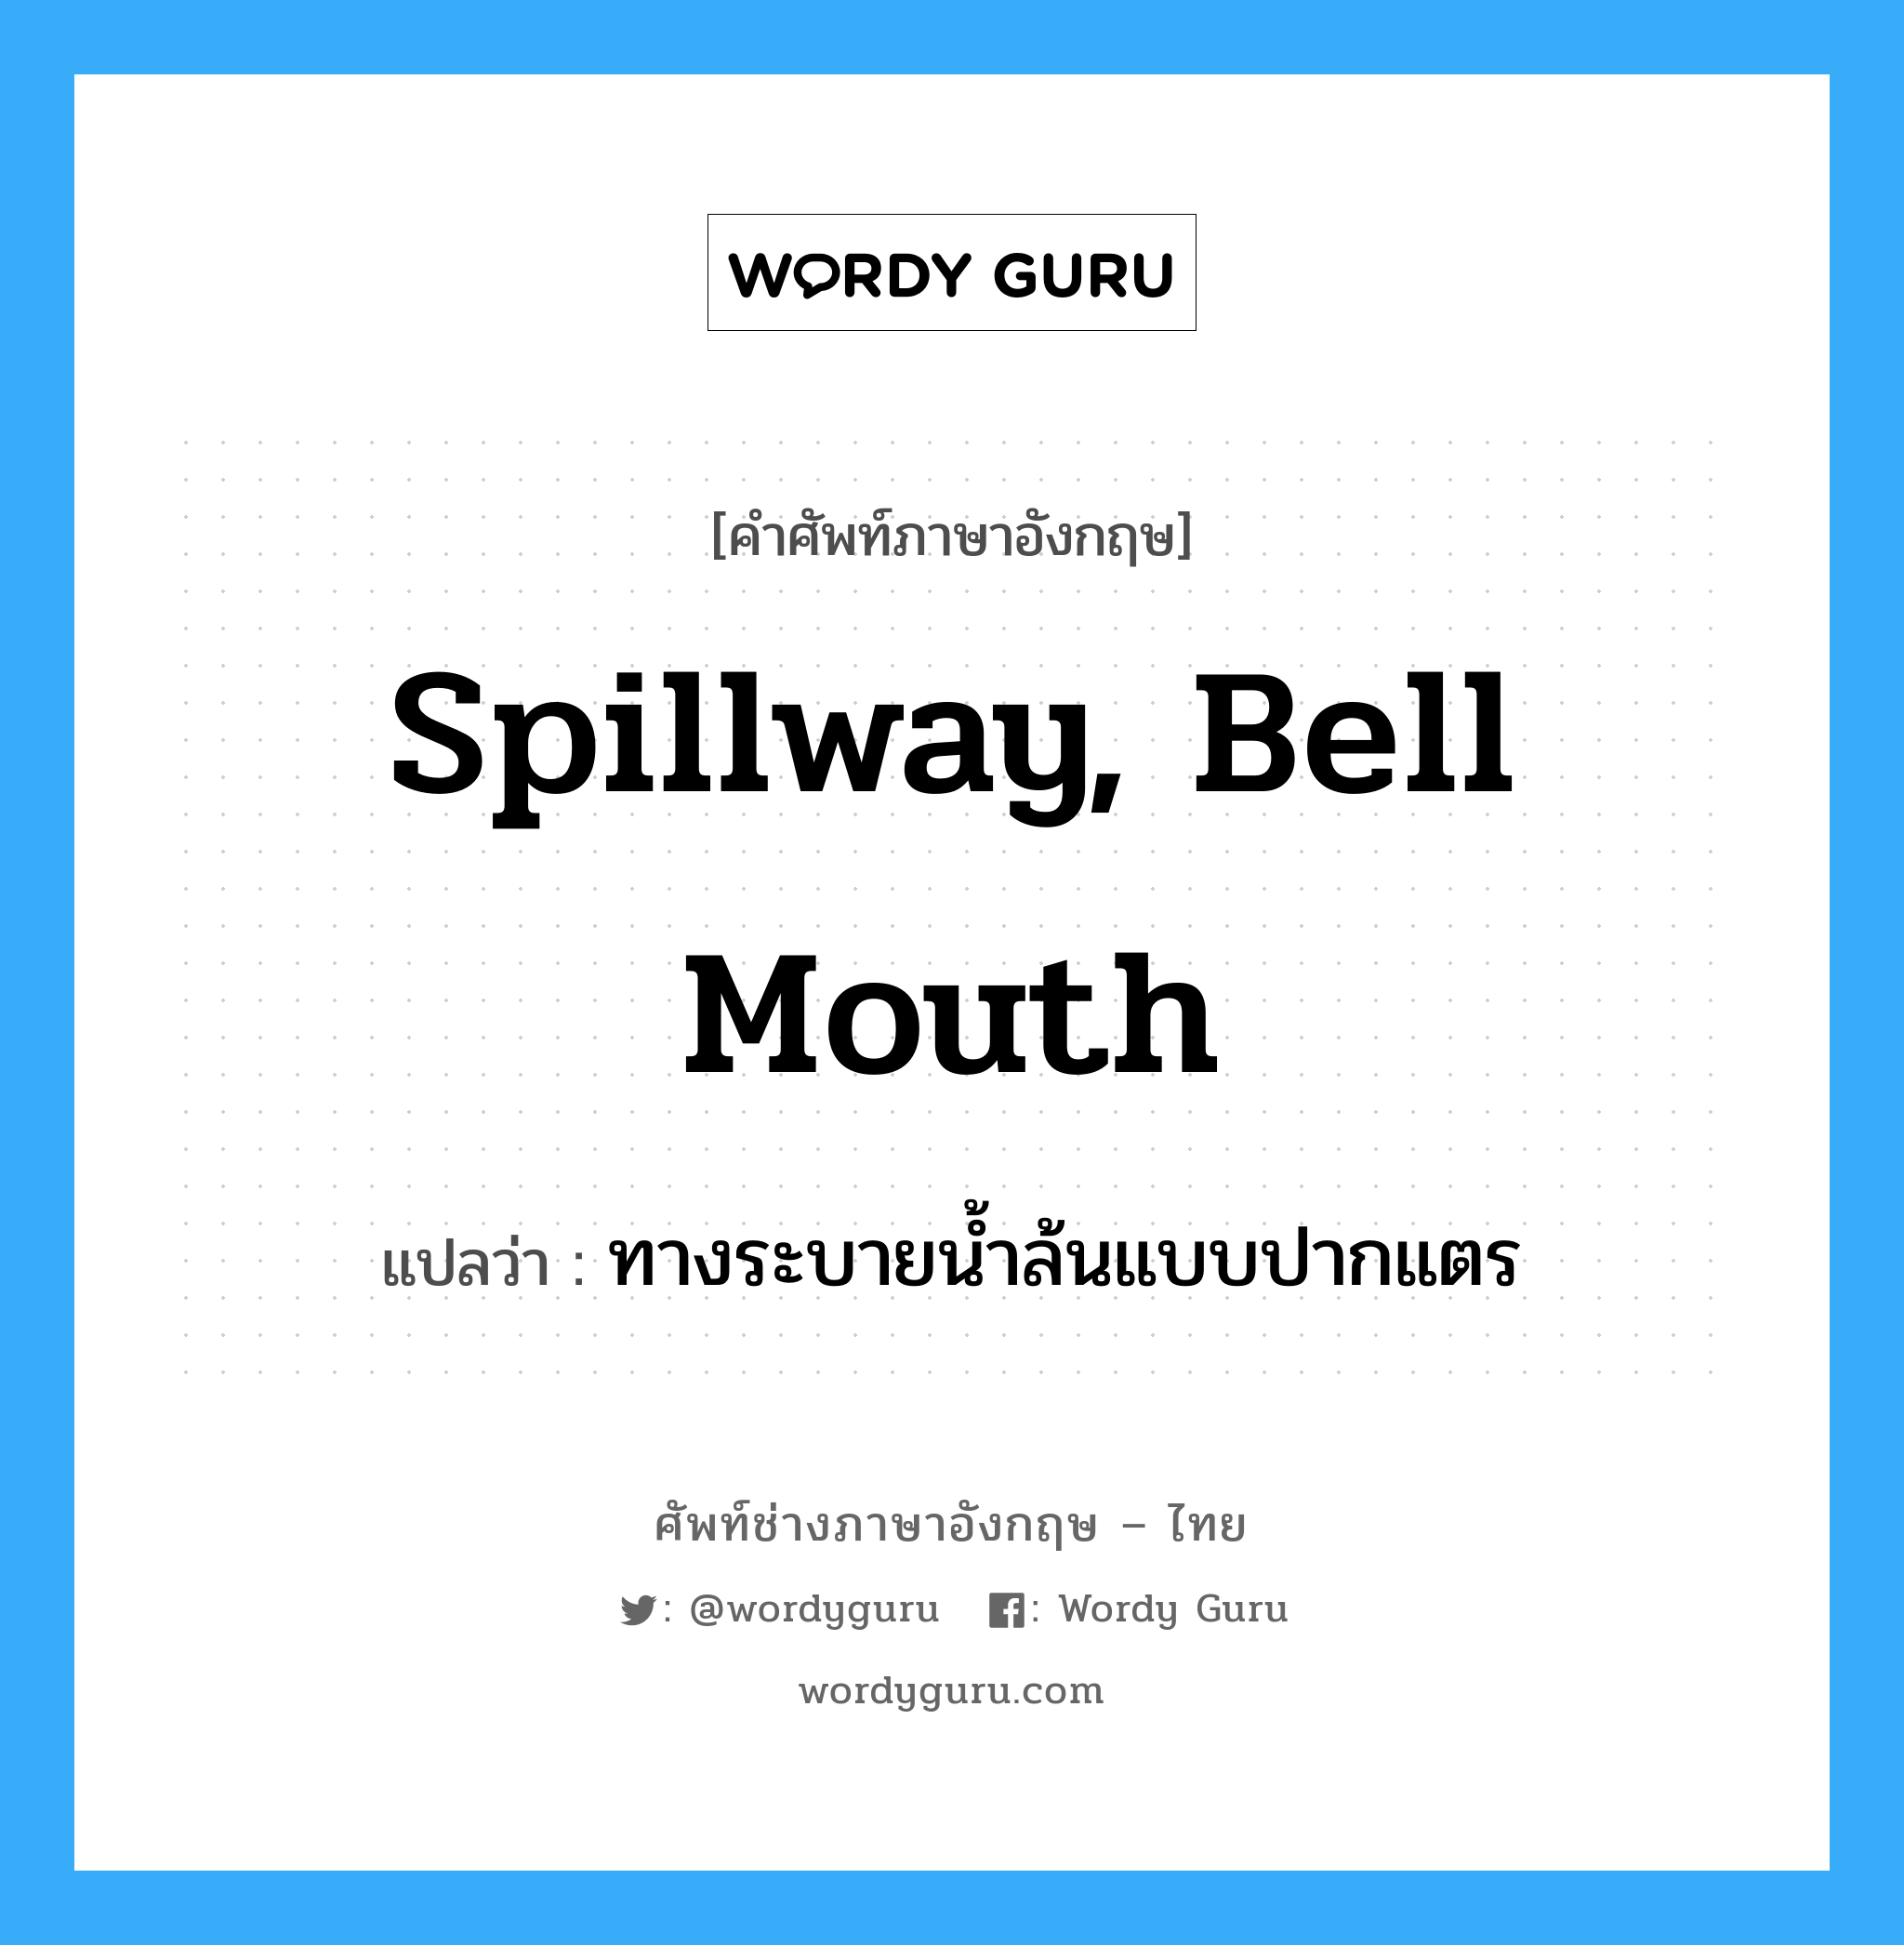 ทางระบายน้ำล้นแบบปากแตร ภาษาอังกฤษ?, คำศัพท์ช่างภาษาอังกฤษ - ไทย ทางระบายน้ำล้นแบบปากแตร คำศัพท์ภาษาอังกฤษ ทางระบายน้ำล้นแบบปากแตร แปลว่า spillway, bell mouth